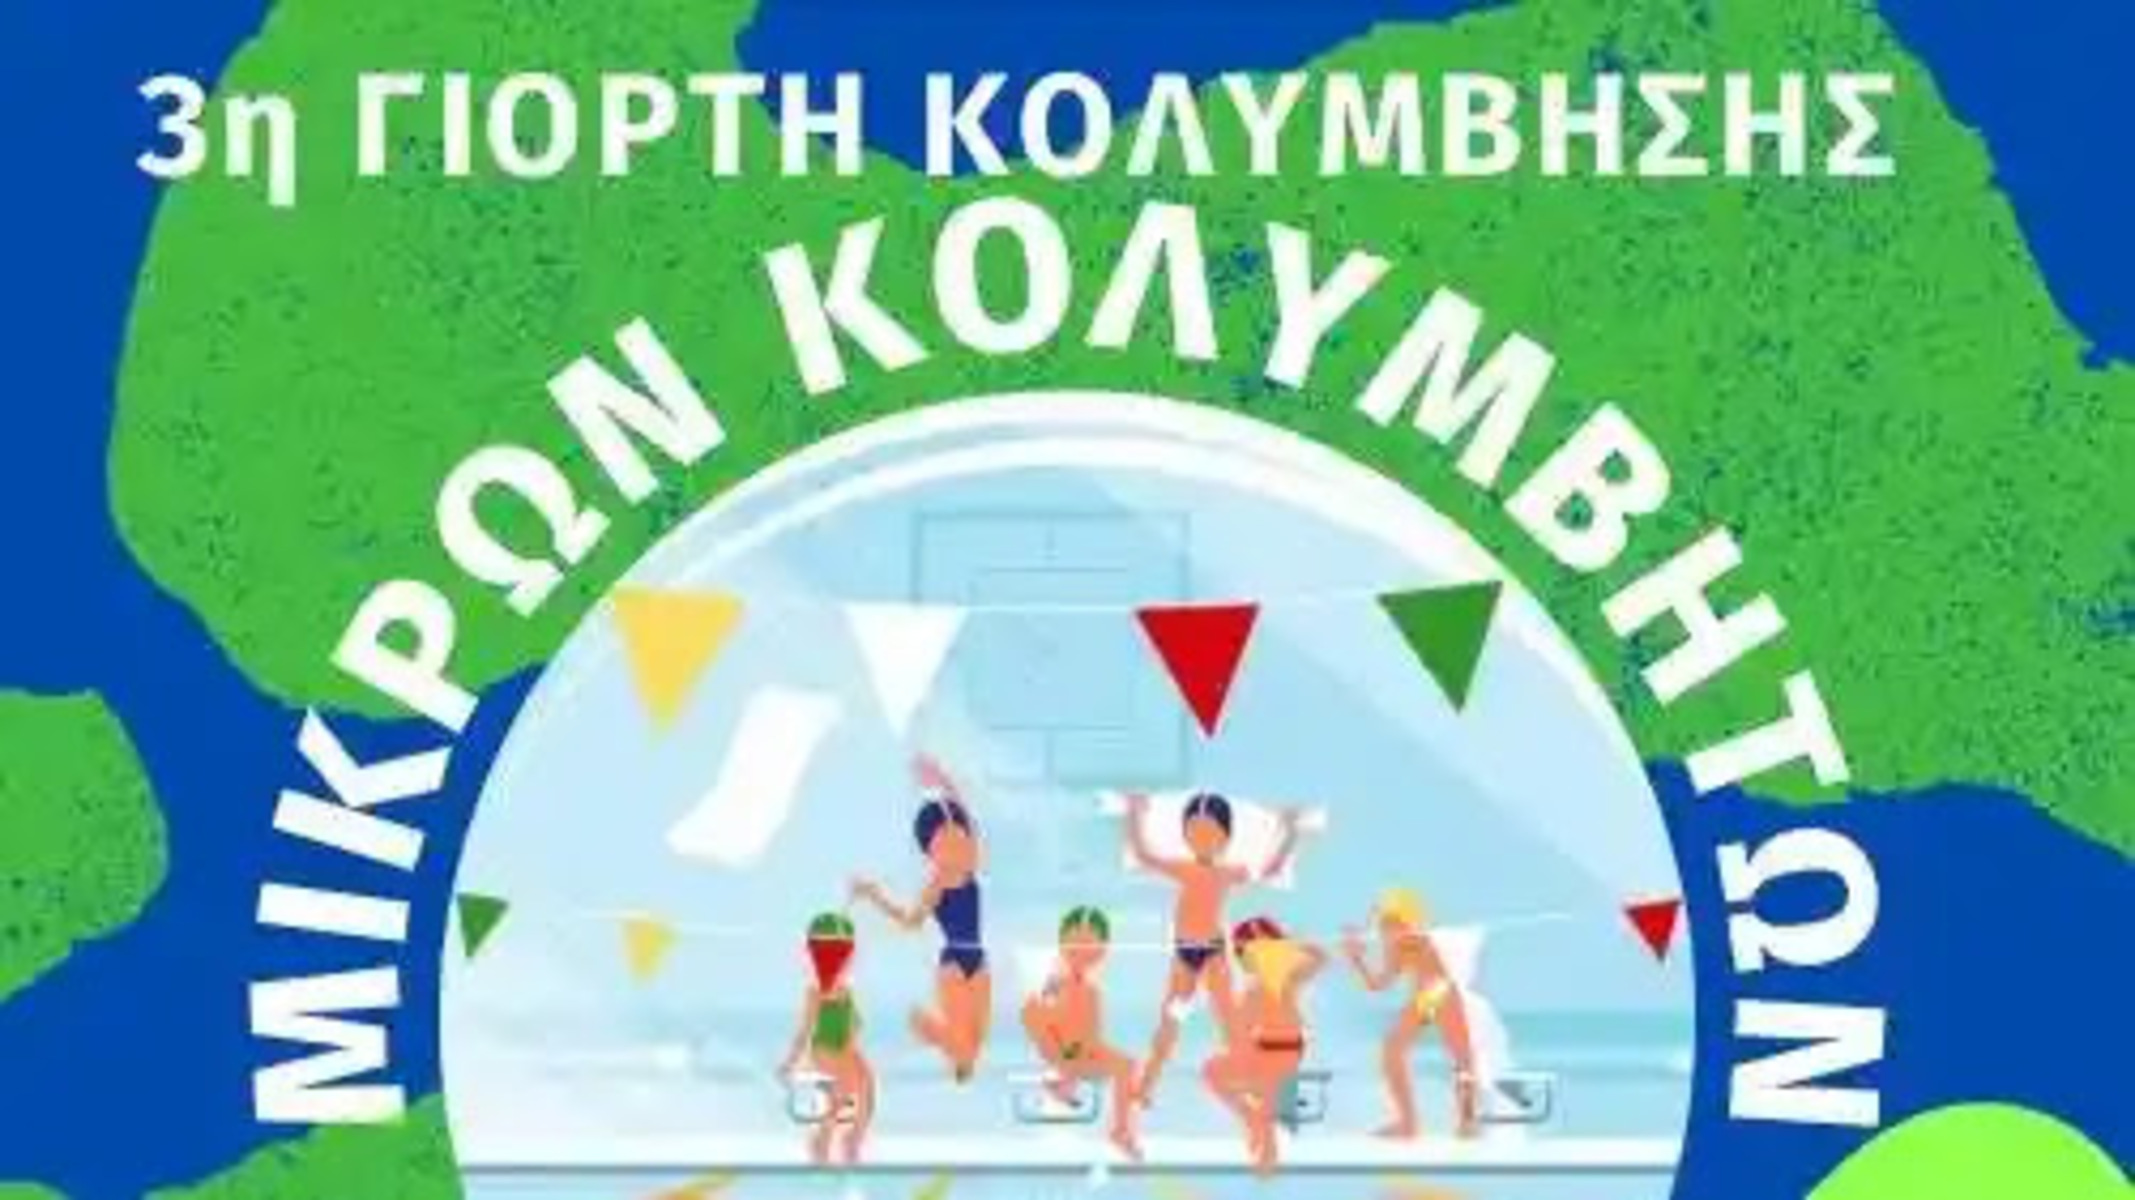 Άργος: Έρχεται η 3η Γιορτή κολύμβησης μικρών κολυμβητών